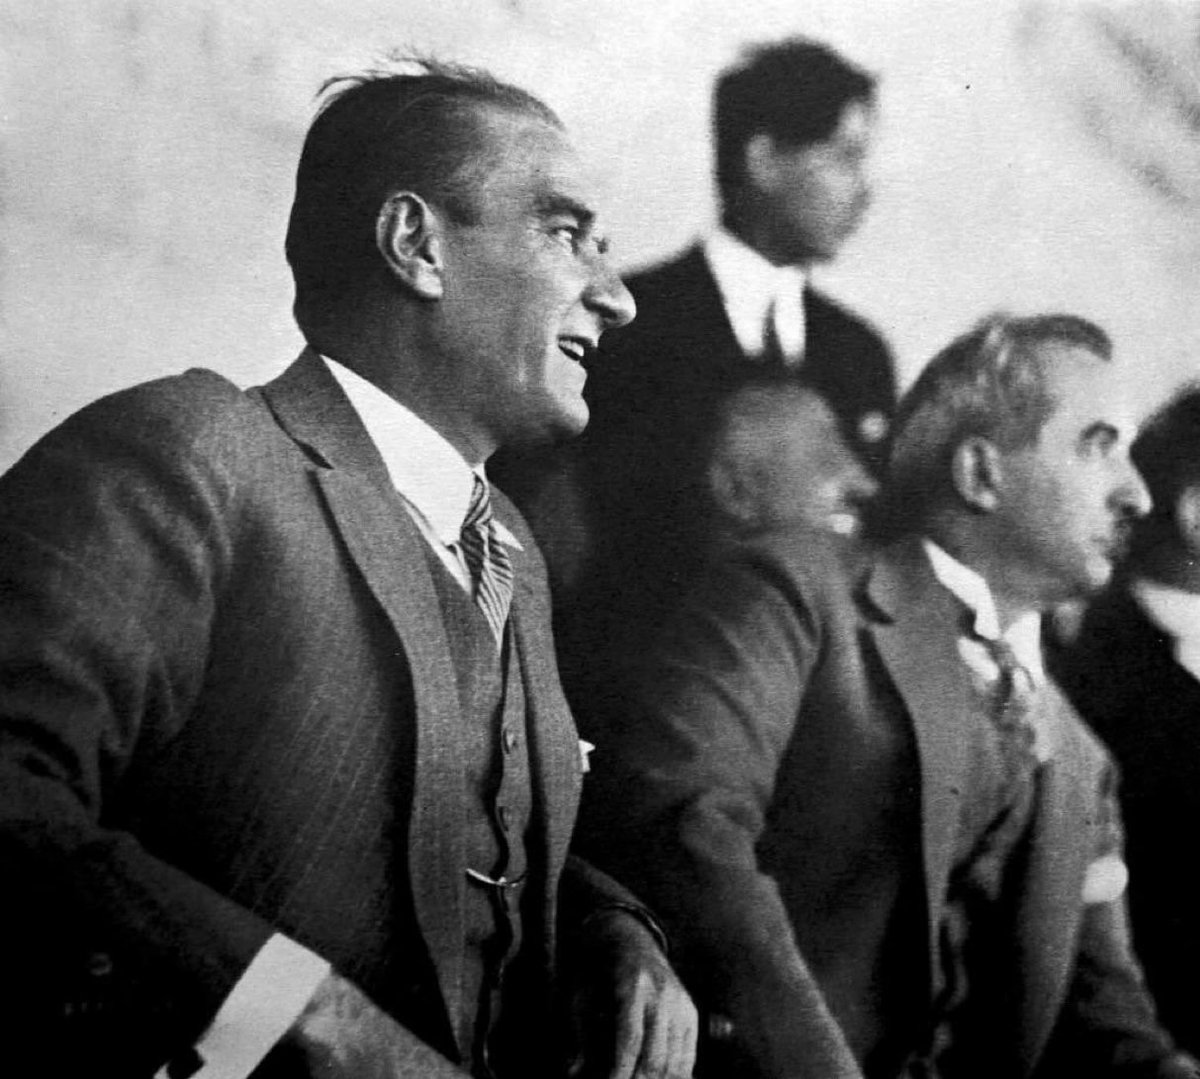 🇹🇷 SON DAKİKA | Cumhuriyetimizin 100. yılında, Ulu Önderimiz Gazi Mustafa Kemal Atatürk adına düzenlenen 97. Gazi Koşusu'nu Urfa Aslanı ile Mehmet Kaya kazandı! 

#GaziKoşusu